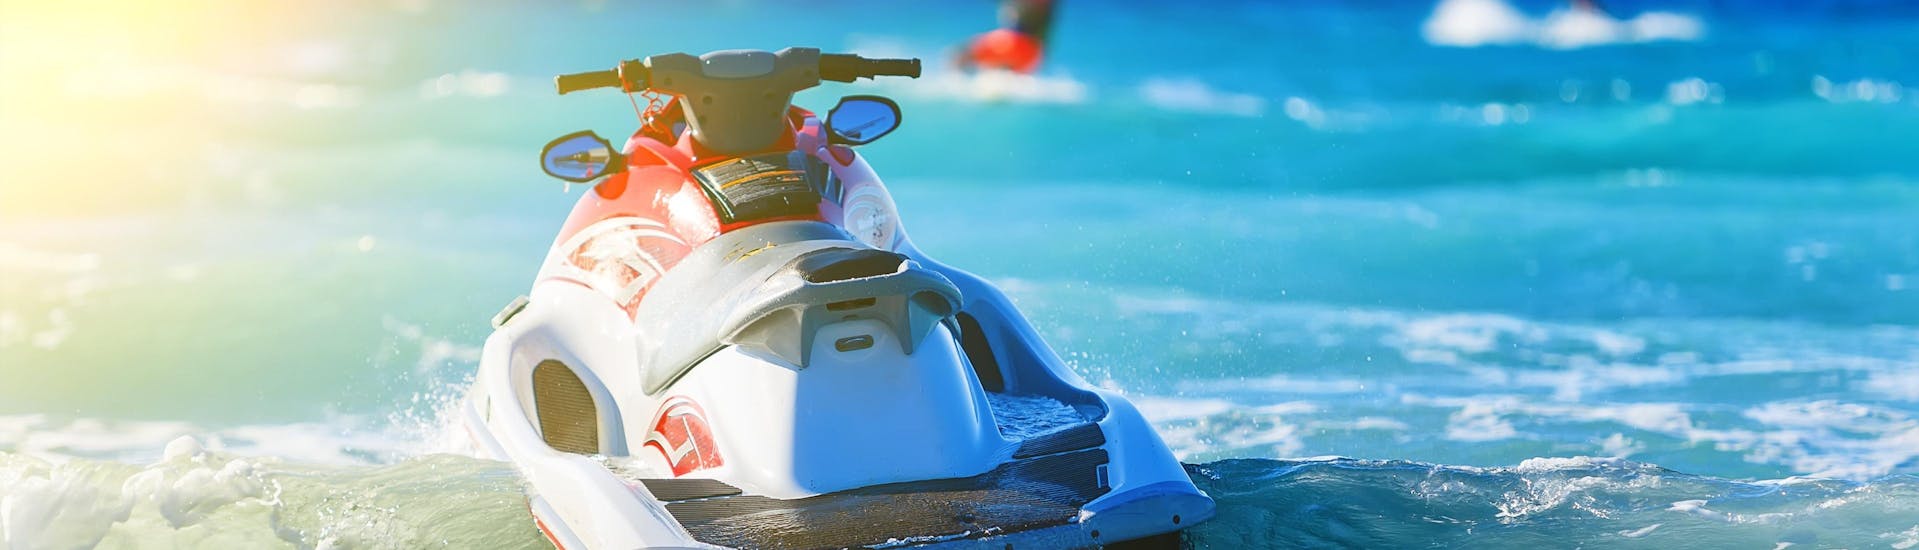 Una moto d'acqua galleggia nel mare, pronta a partire per chiunque voglia fare un giro a Creta con una moto d'acqua.